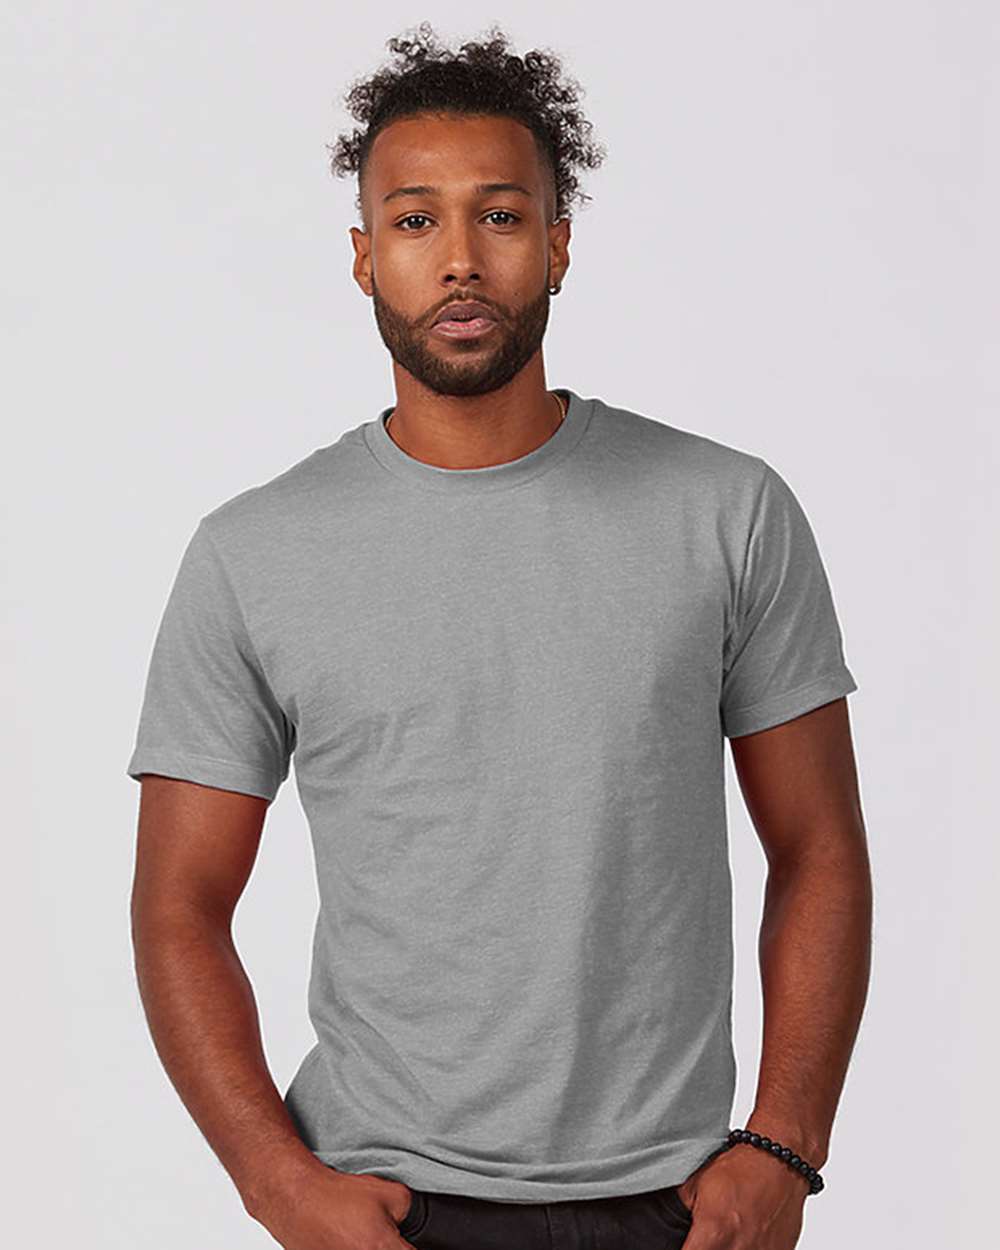 Tultex 541 Unisex Premium Cotton Blend T-Shirt - Athletic Heather - HIT a Double